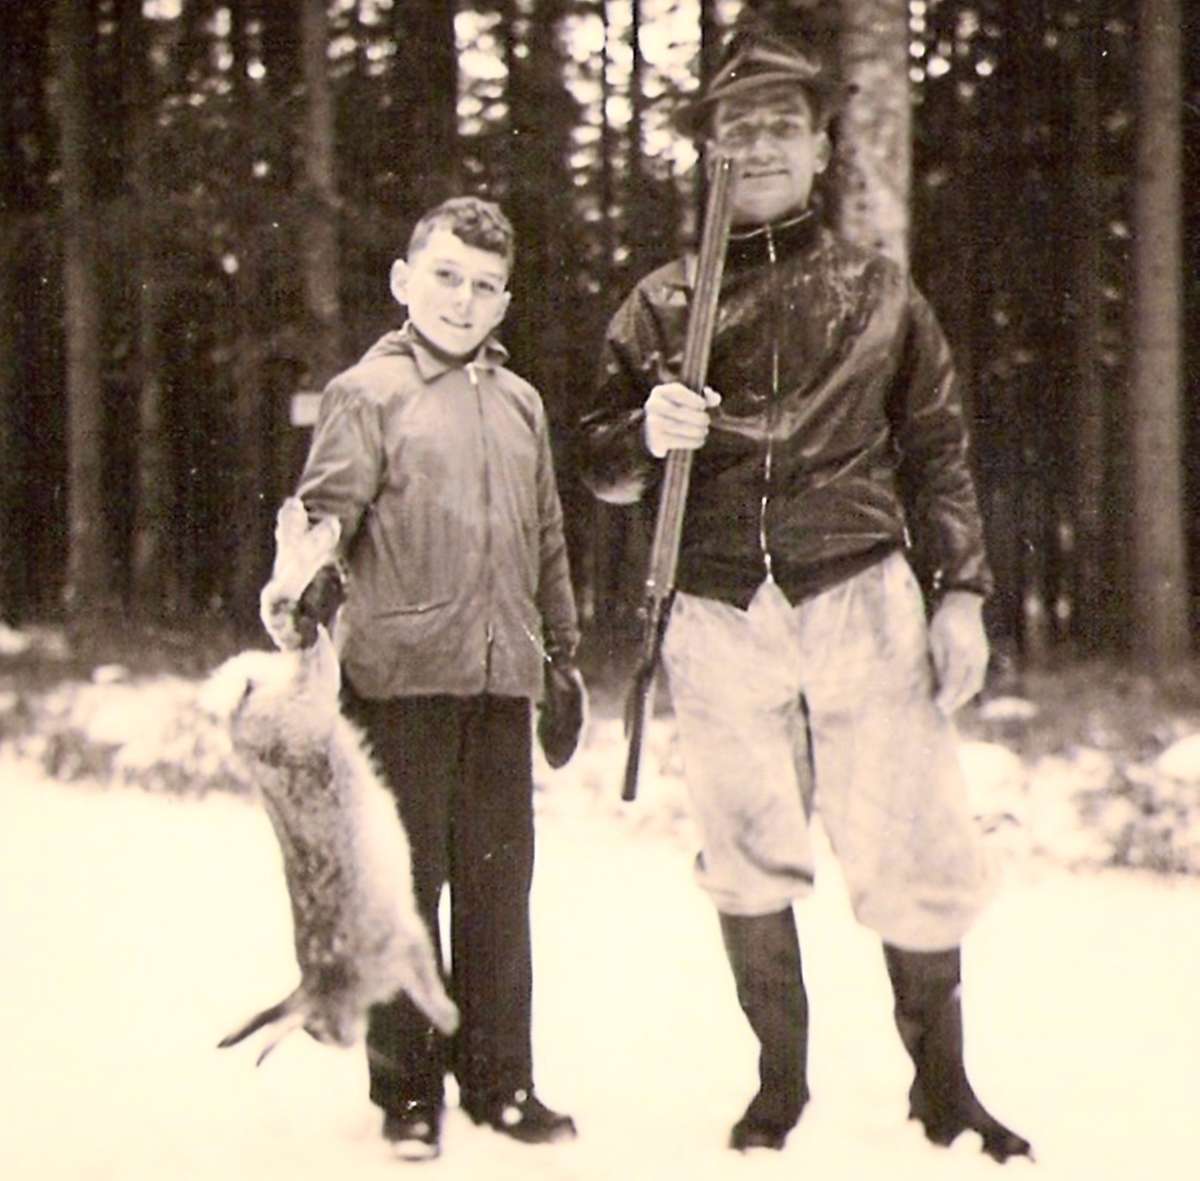 Von einer kleinen Drückjagd im Nordschwarzwald Mitte der 1950er-Jahre stammt das Bild mit dem Jungen und dem Jäger, denen damals dem Vernehmen nach trotz der Schneelage keine Wildschweine begegneten.Foto: Digitalarchiv Schabert Foto: Schwarzwälder Bote